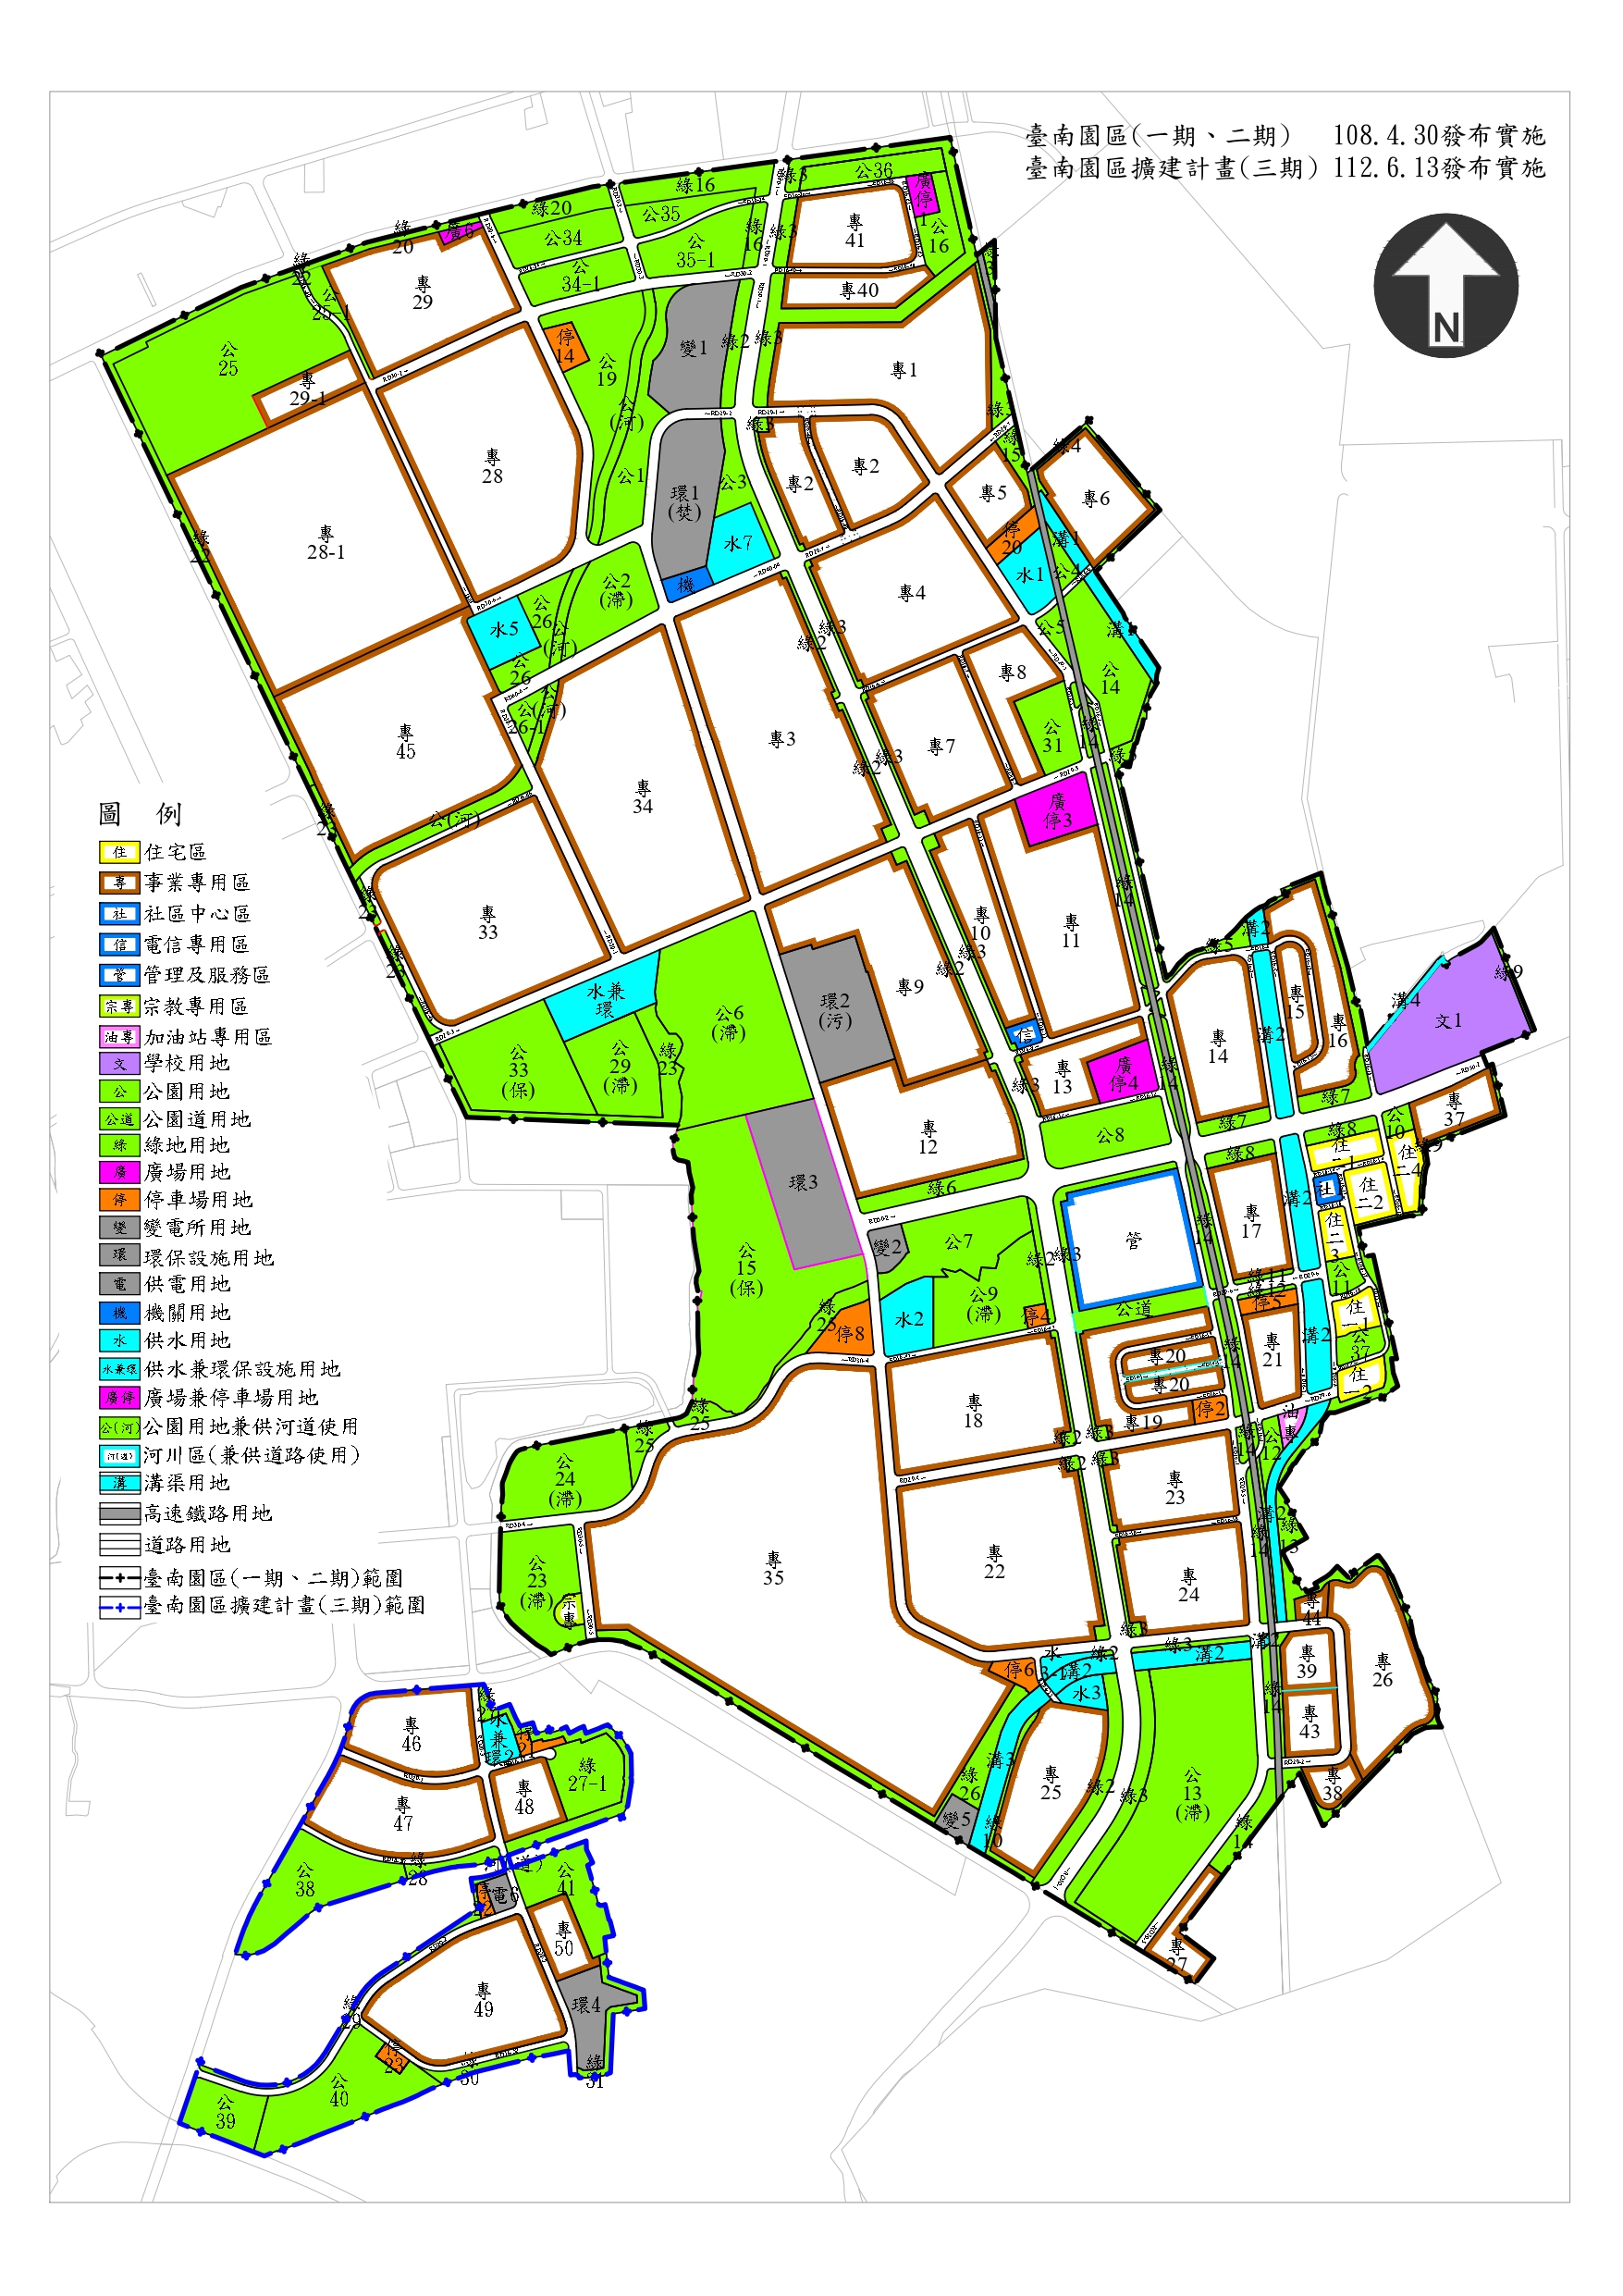 臺南園區都市計畫示意圖，用以表示臺南園區土地都市計畫之土地使用分區及公共設施用地規劃情形。